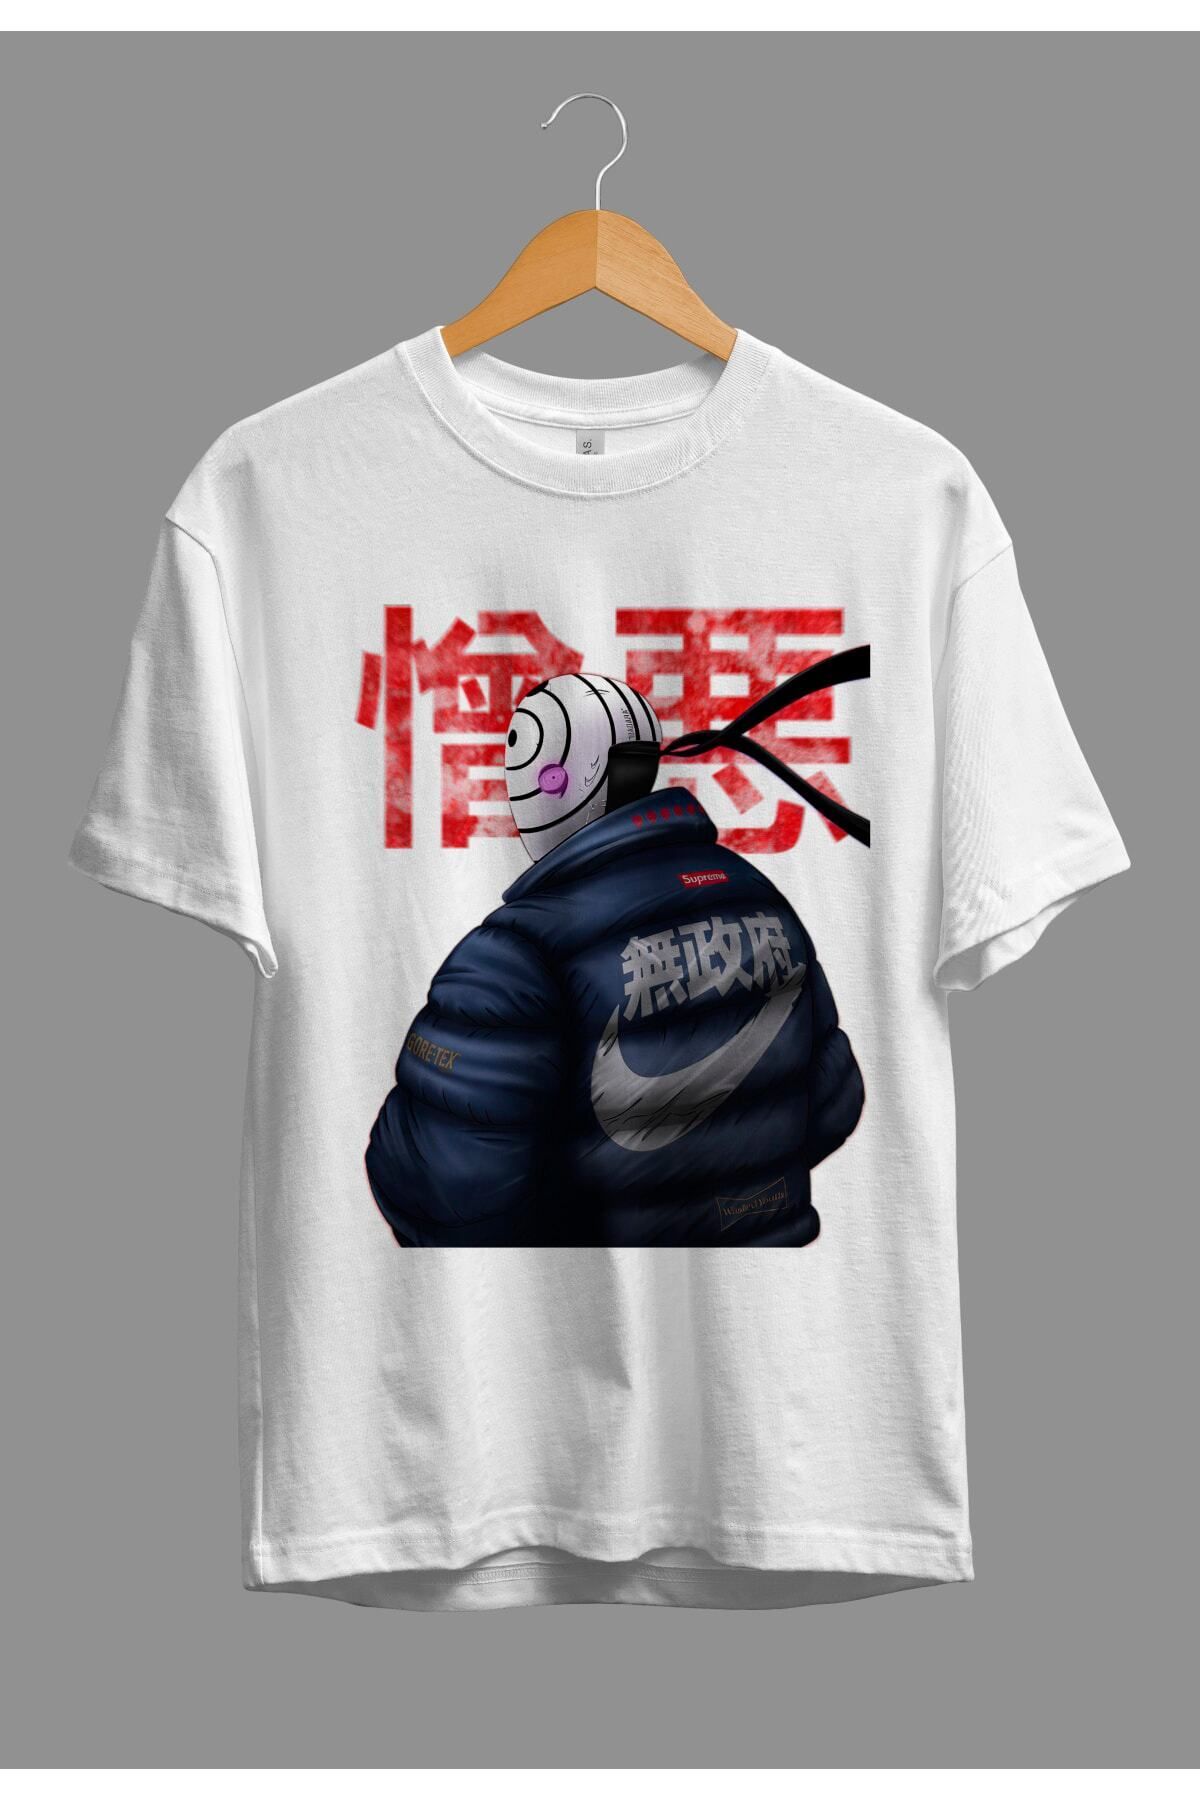 NİCE Oversize Obito Anime Karakter Baskılı Özel Tasarım T-Shirt